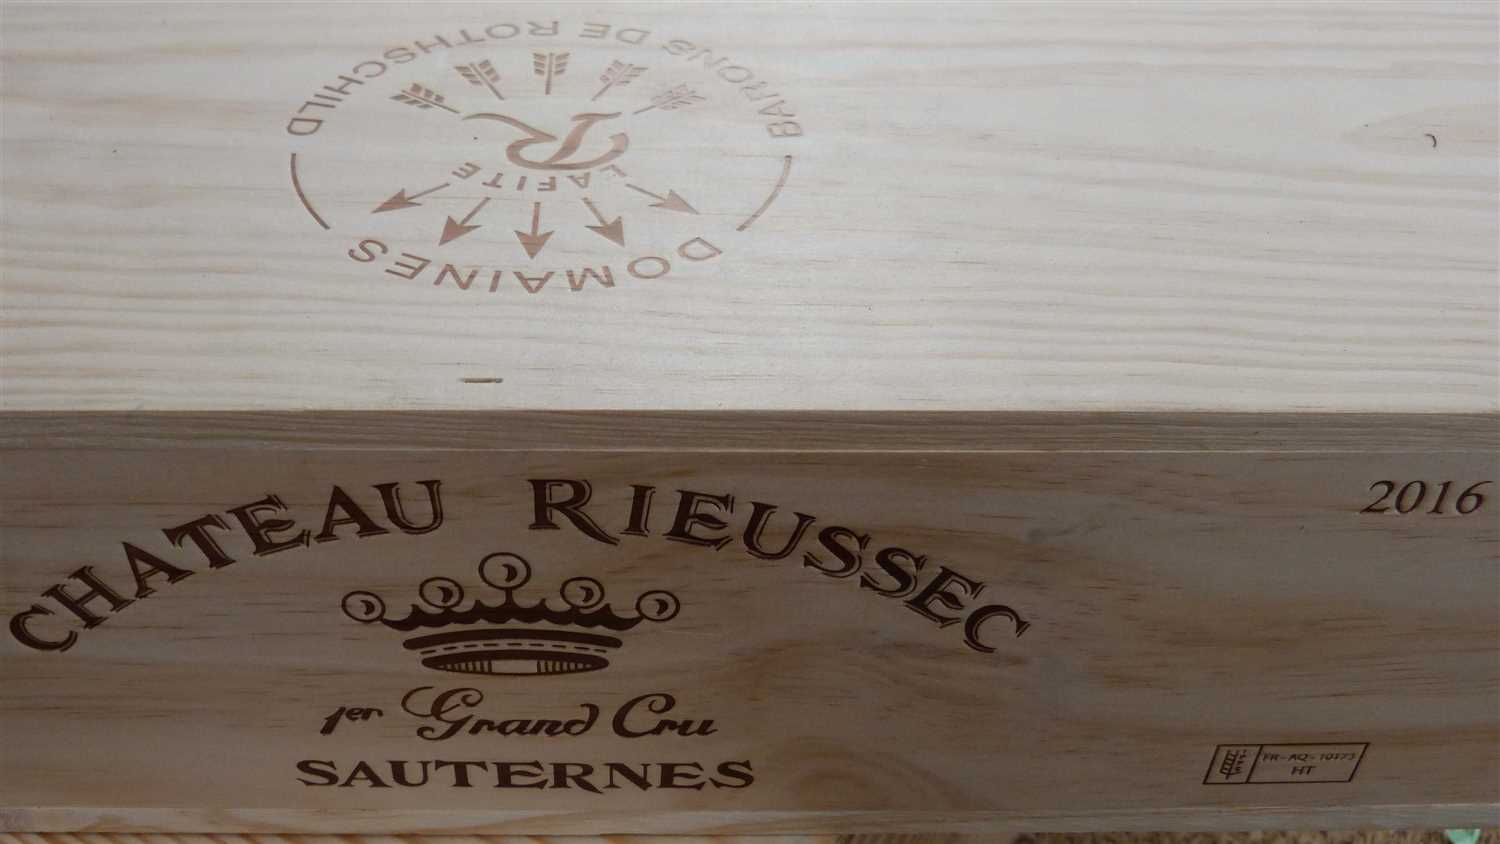 Lot 19 - 6 Bottles Chateau Rieussec Premier Cru Classe Sauternes 2016 (in OWC)